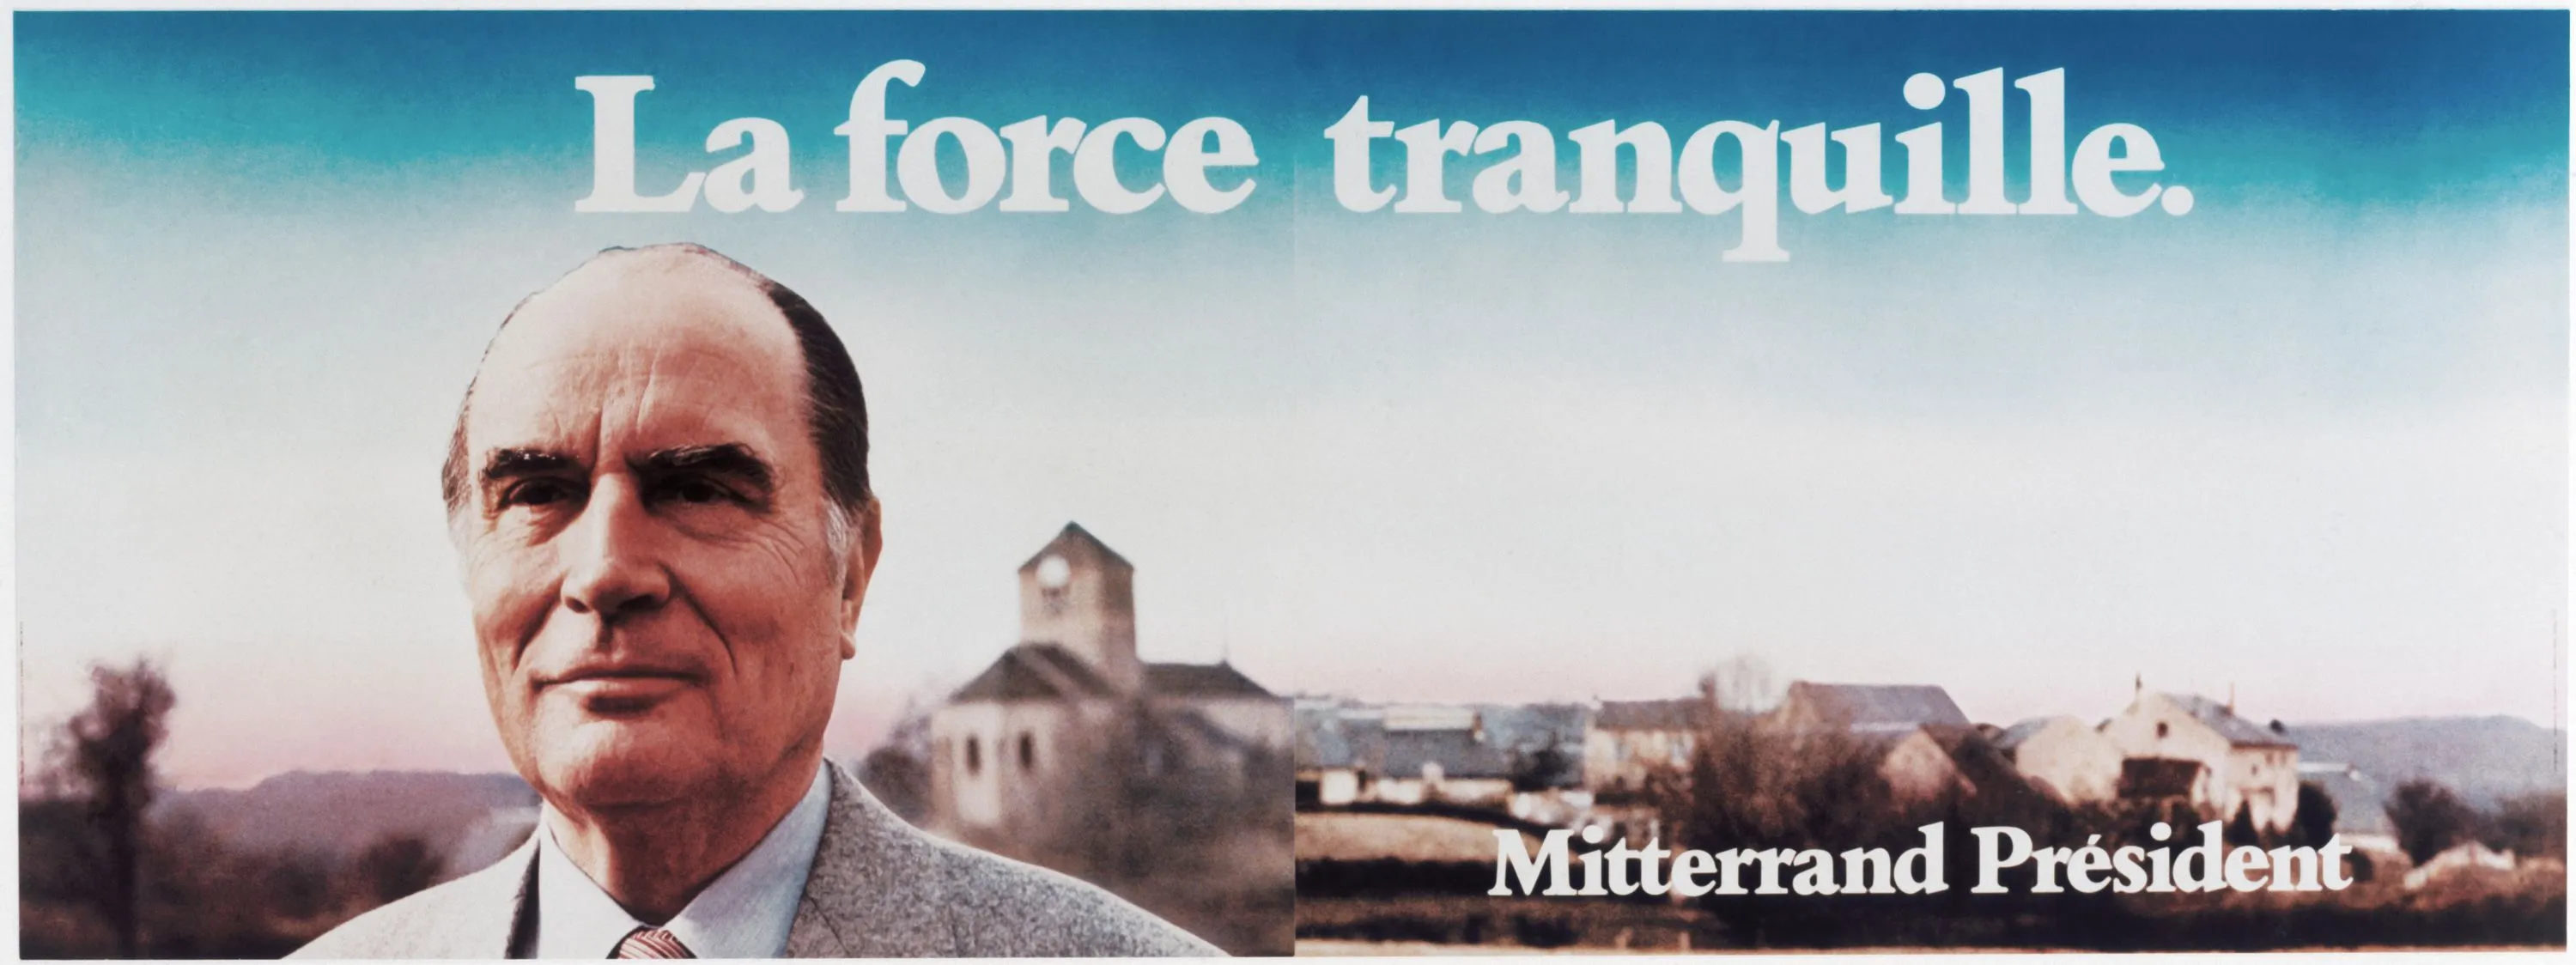 Affiche officielle de Mitterrand, 1981.